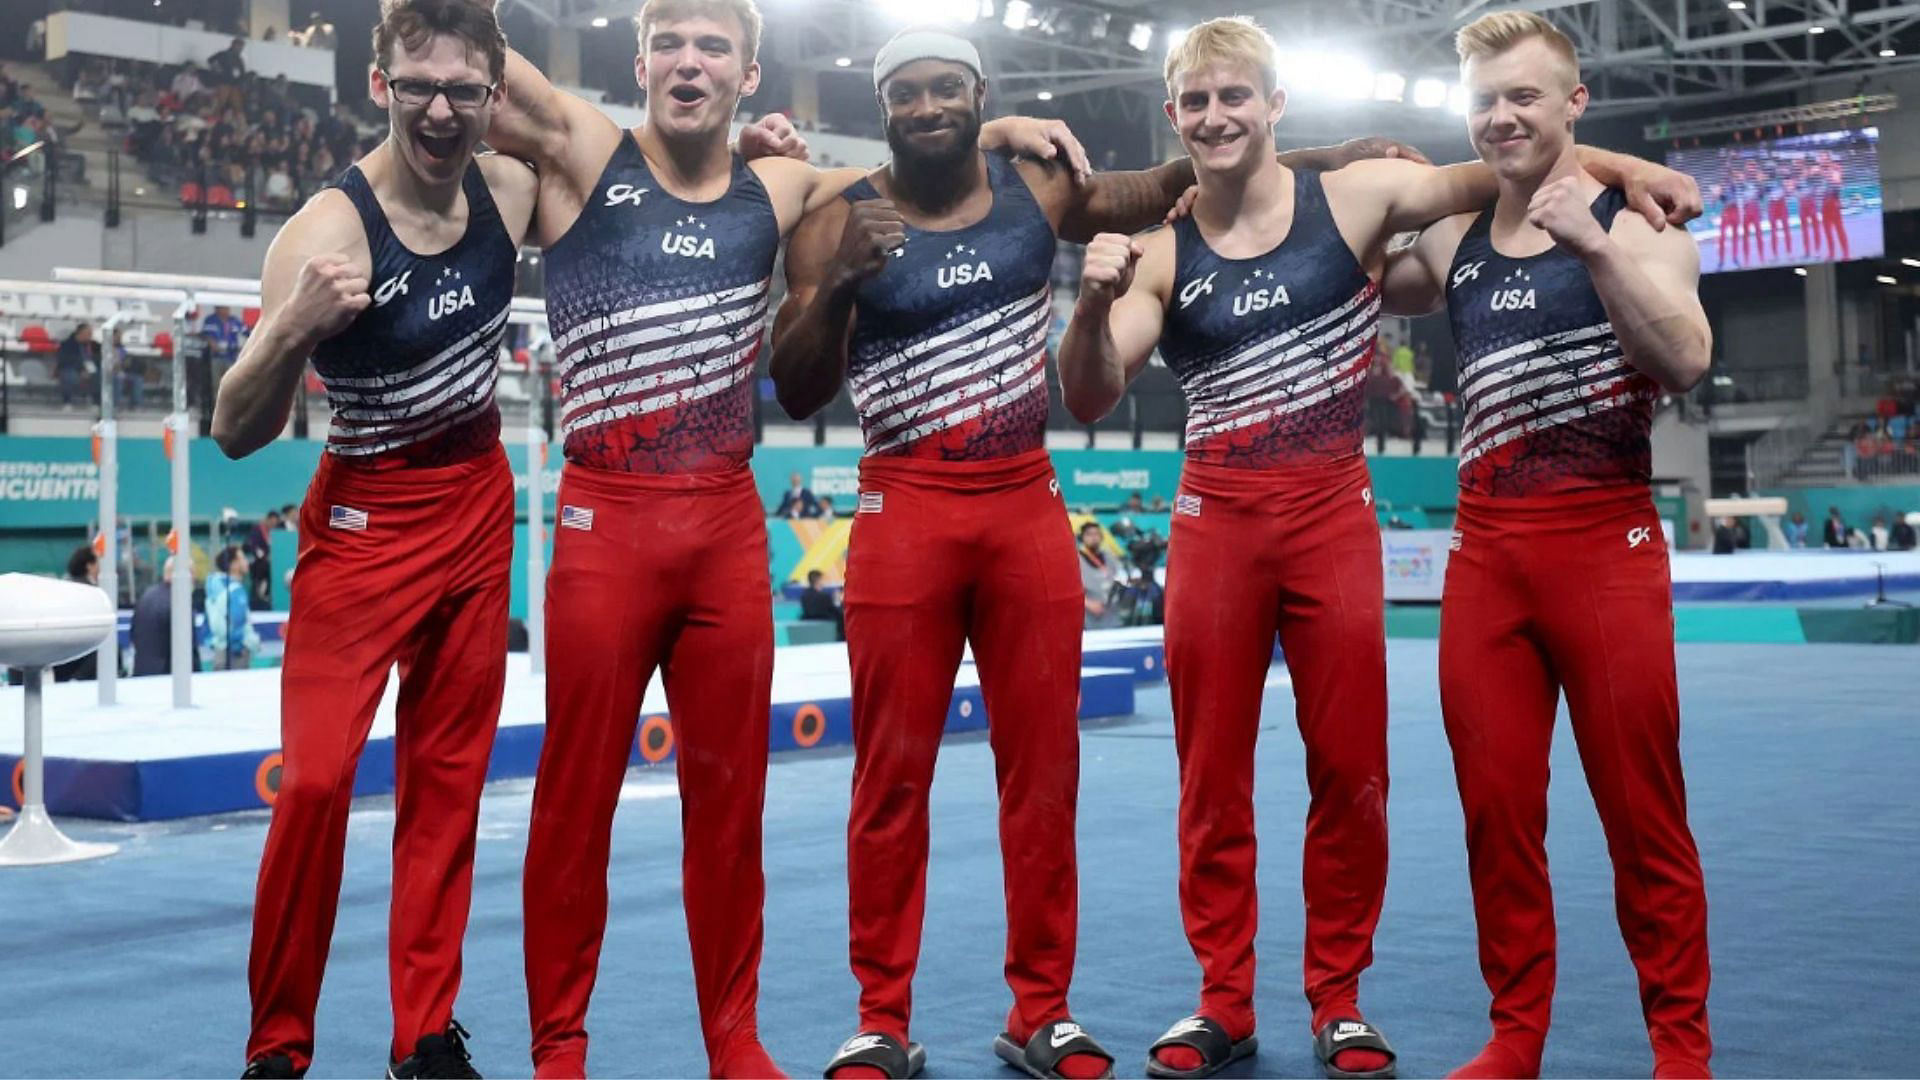 "Final Push" Team USA men's gymnastics describe their quest to